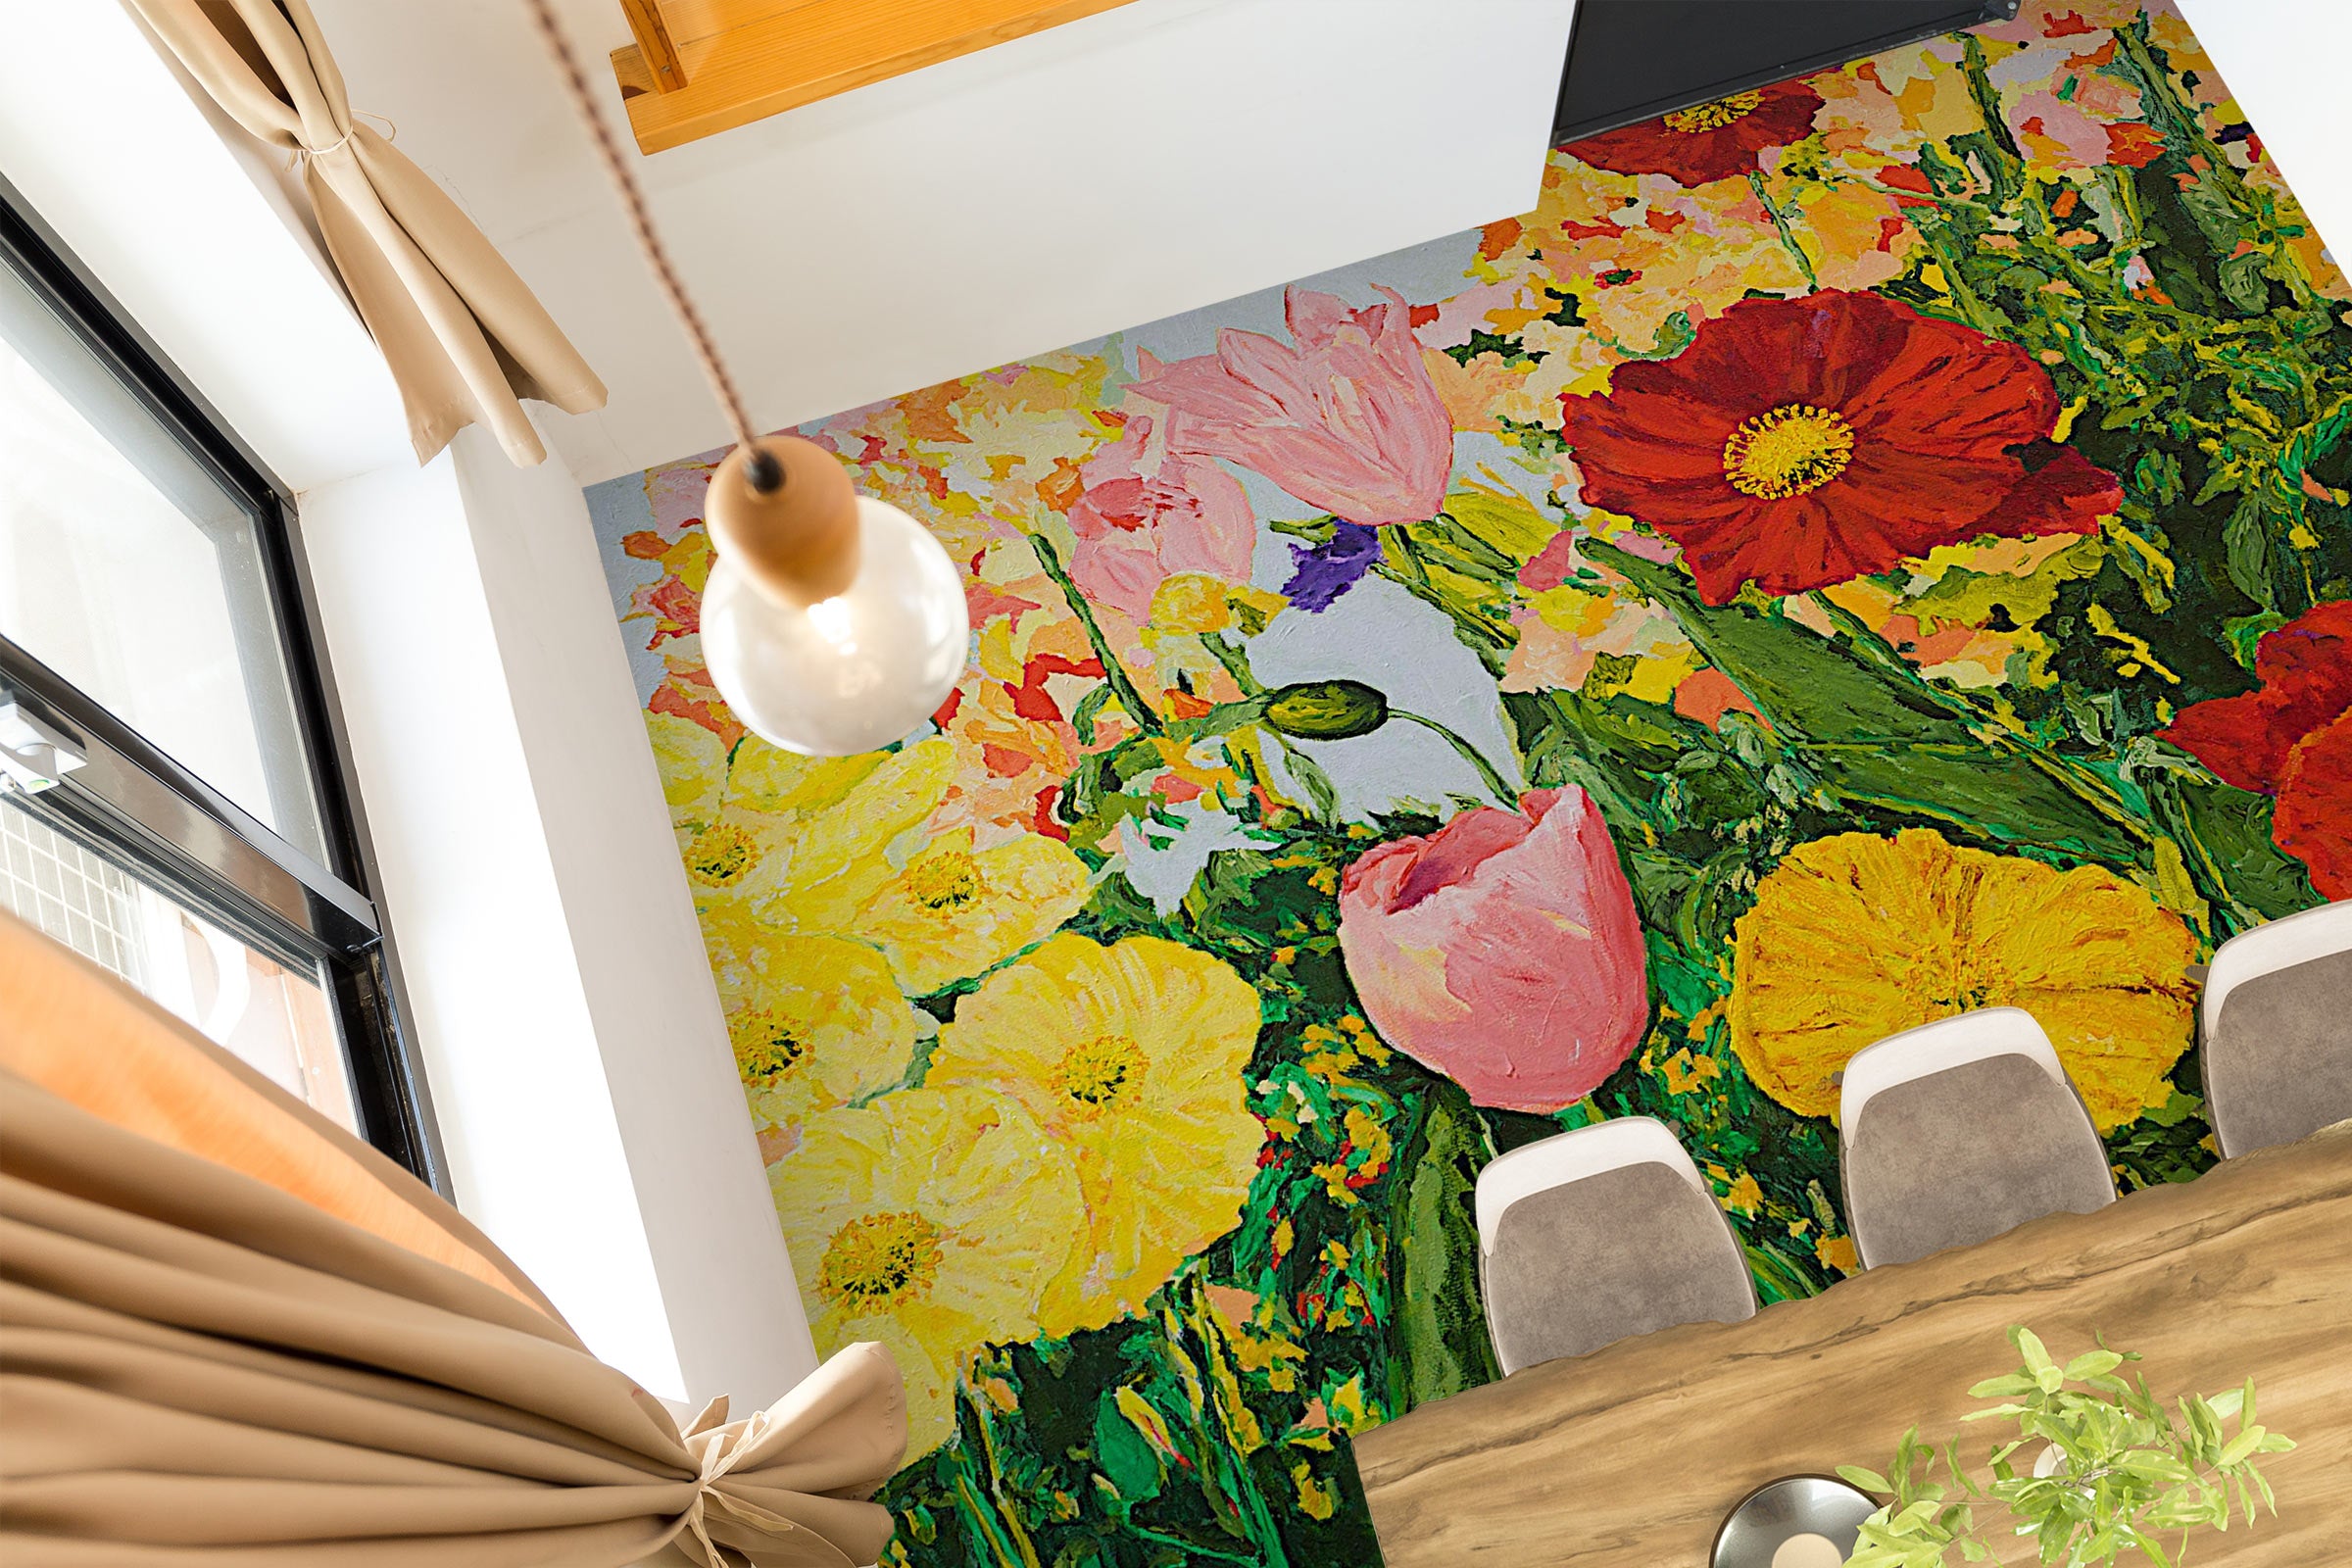 3D Color Flowers Painting 9566 Allan P. Friedlander Floor Mural